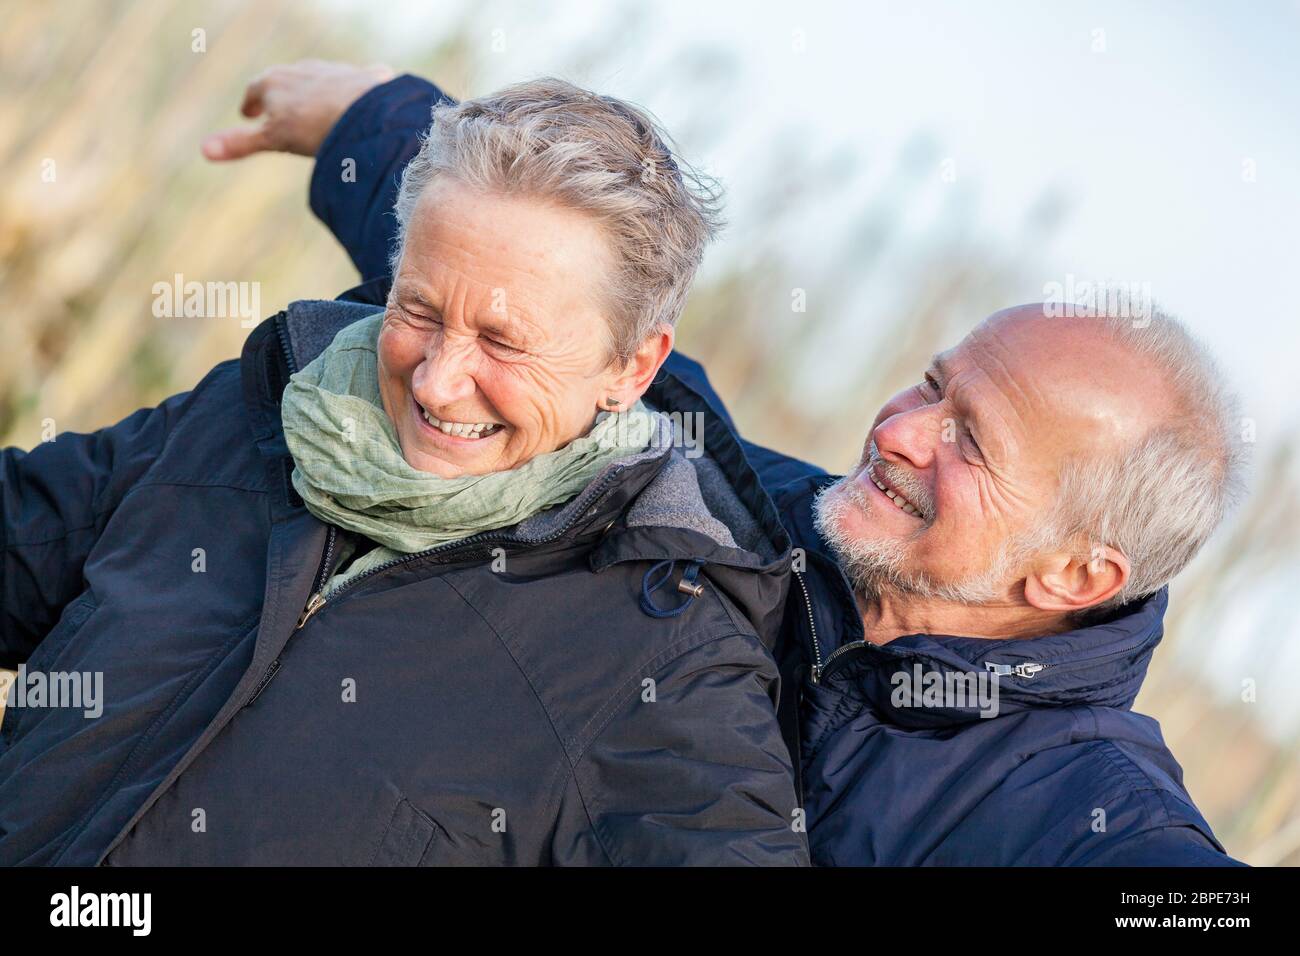 Senioren älteres paar glücklich lachend im urlaub freizeit natur ostsee Foto Stock